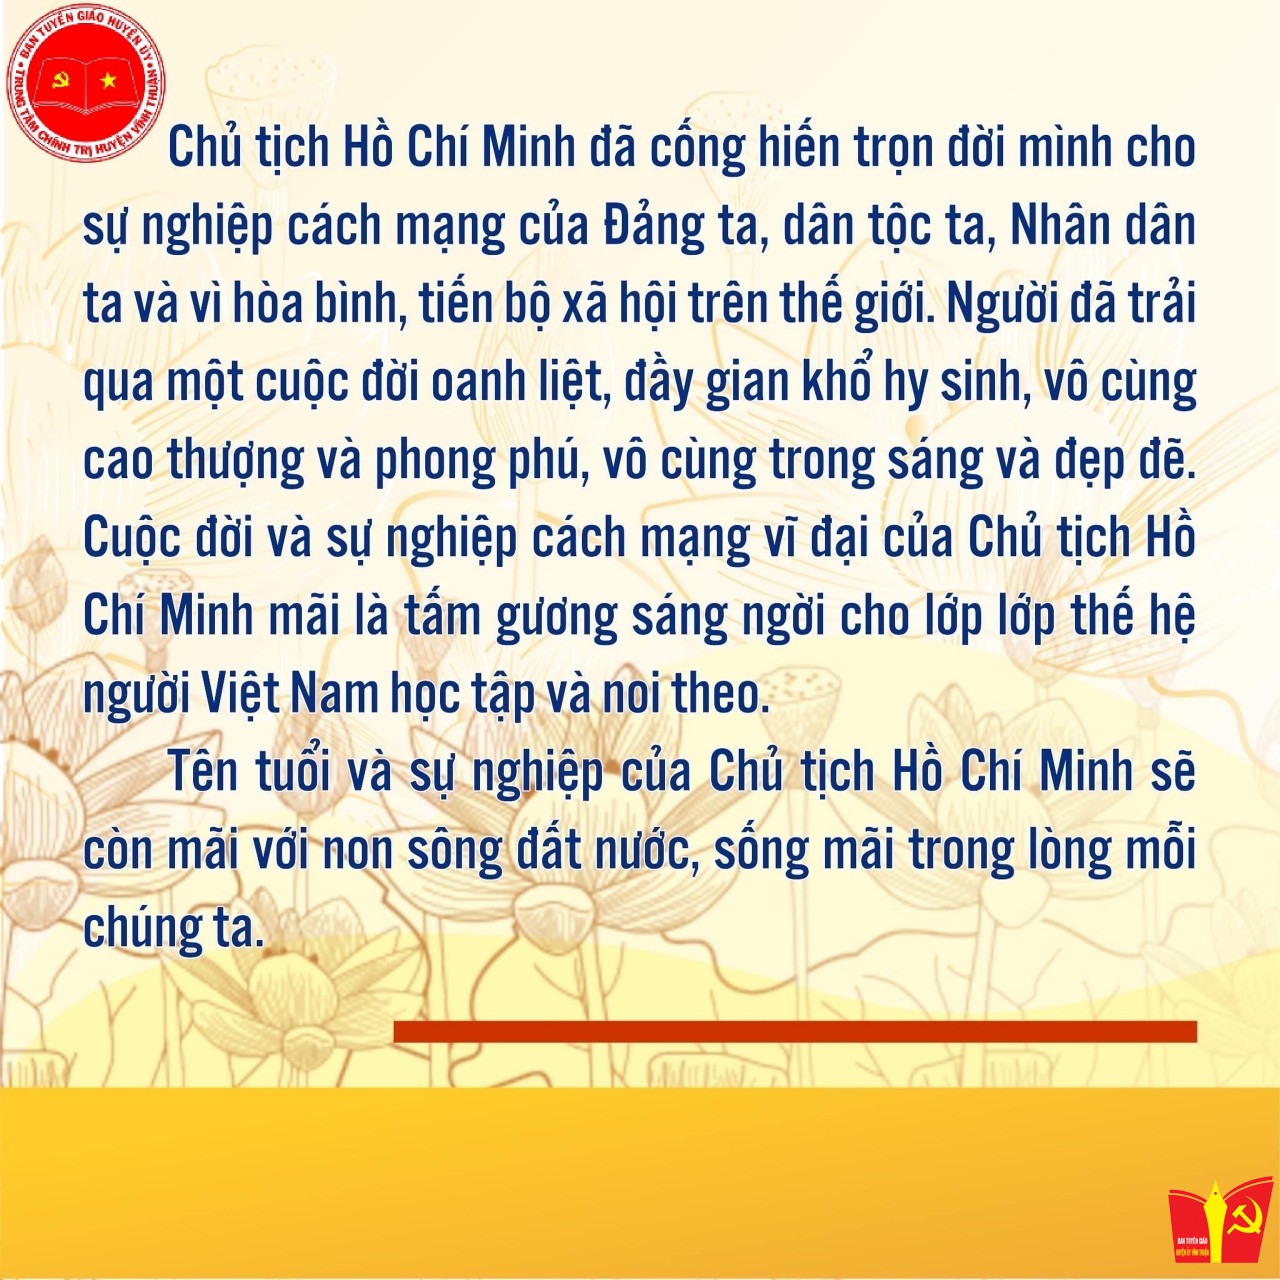 Thân thế, sự nghiệp cách mạng của Chủ tịch Hồ Chí Minh